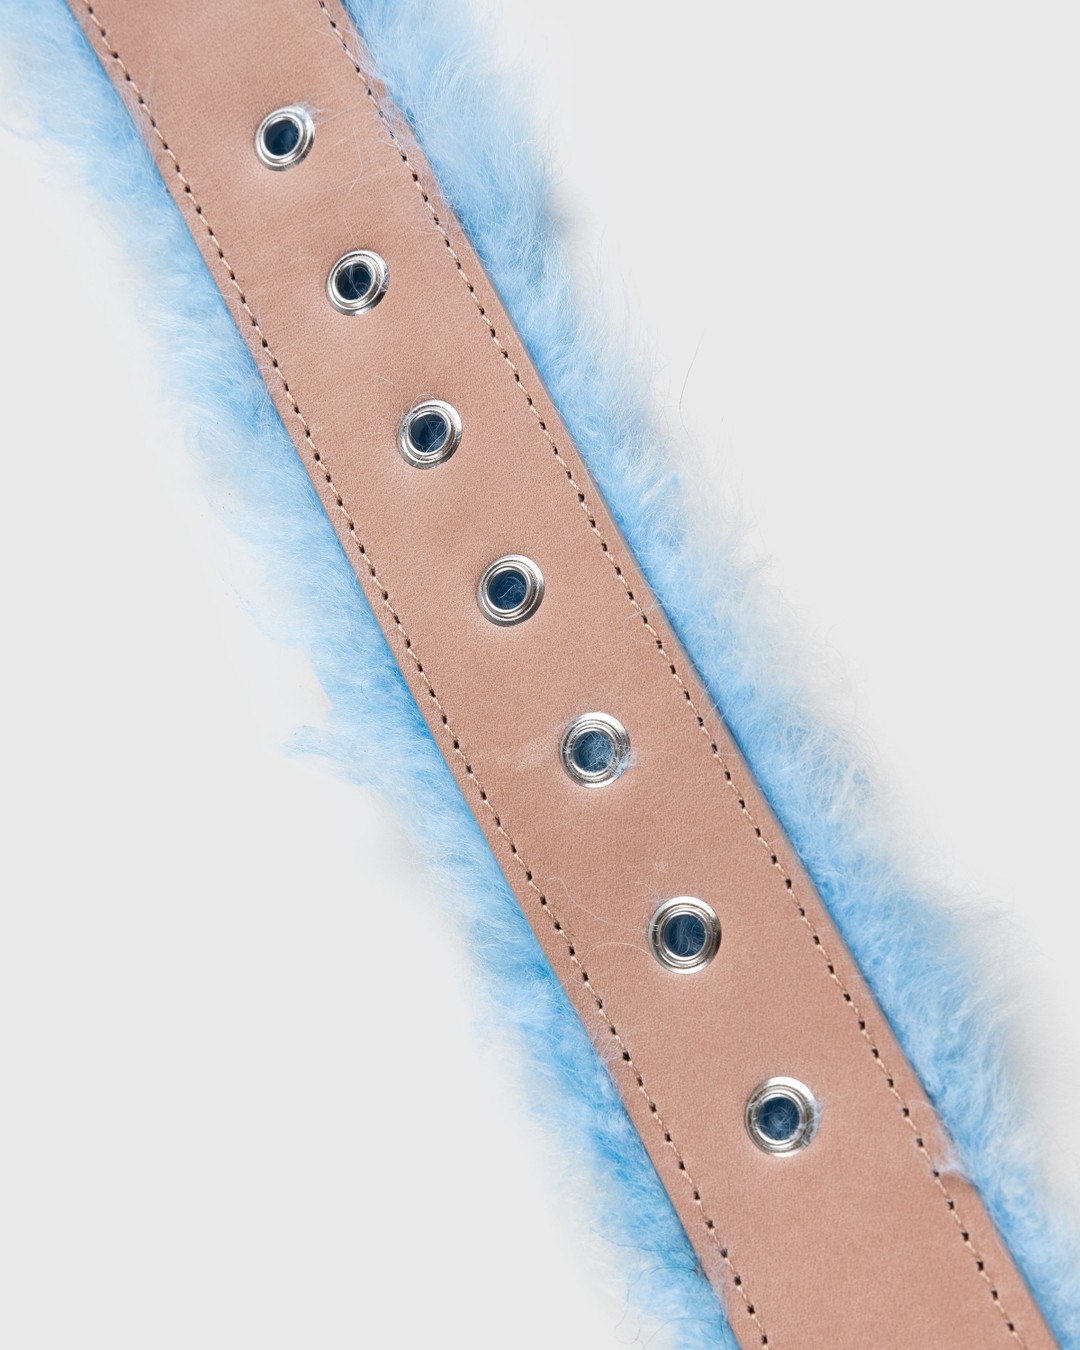 Dries van Noten – Fluffy Belt Blue - Belts - Blue - Image 3